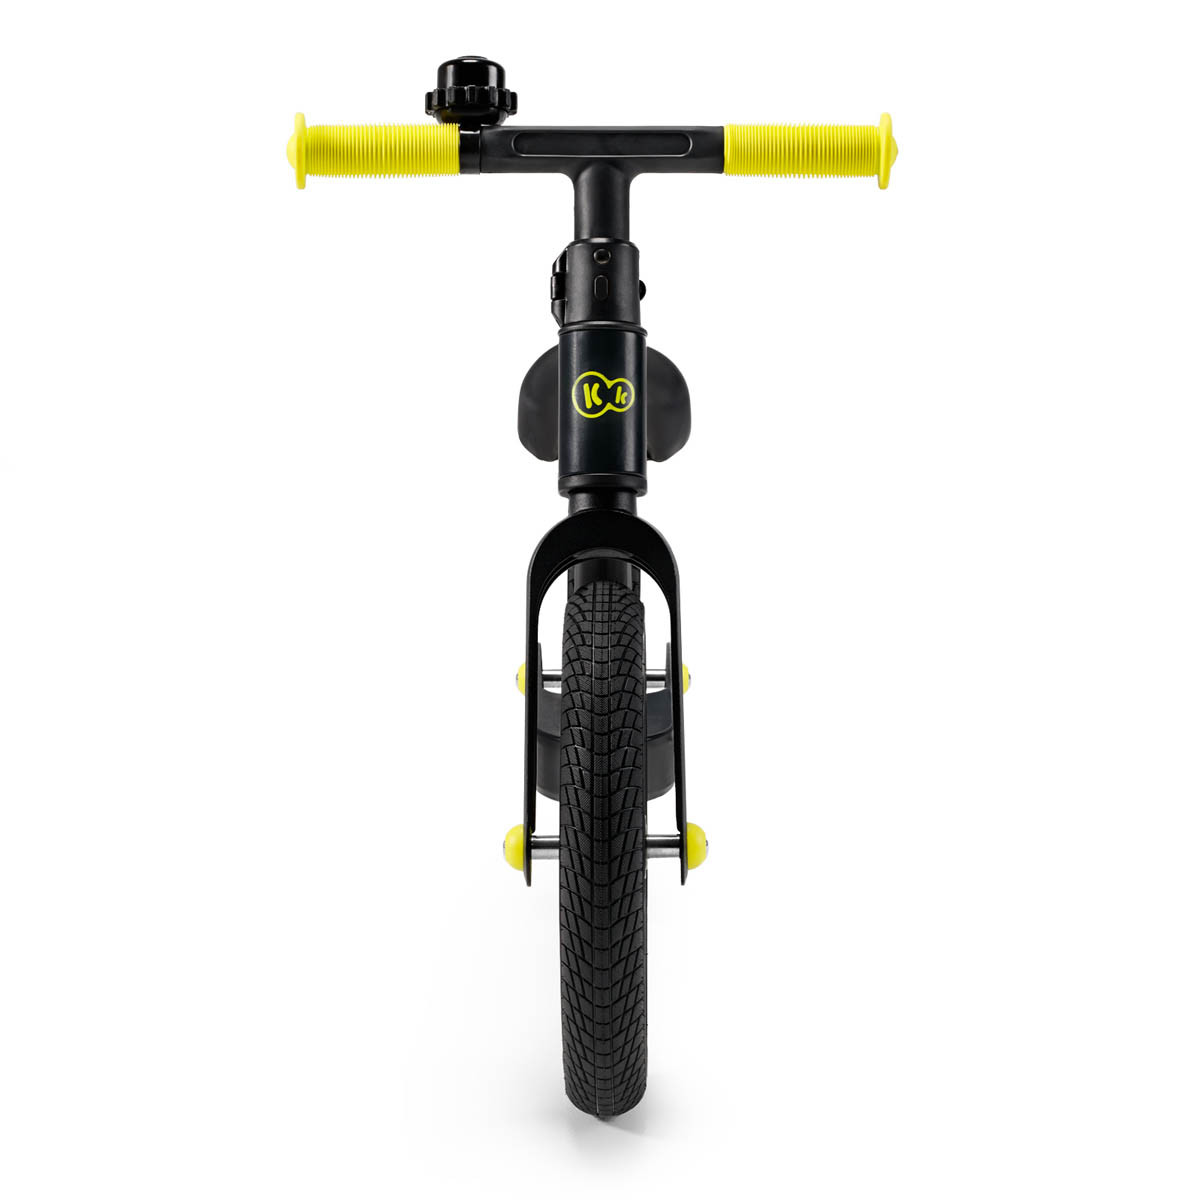 Kinderkraft goswift bicicleta de equilibrio es fina y, gracias a su peso, se transporta sin problemas.